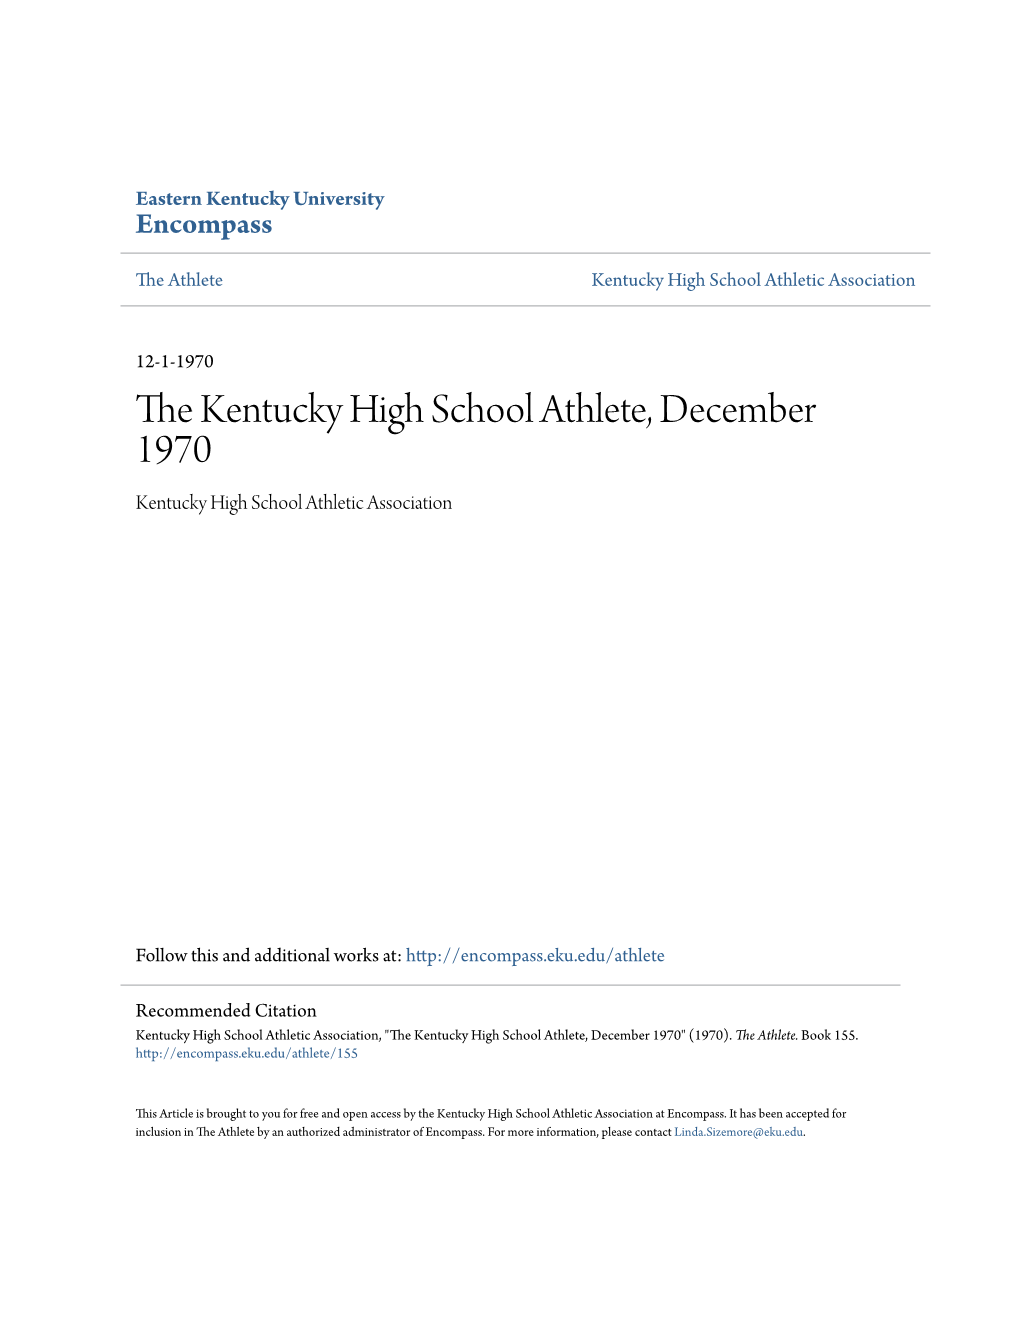 The Kentucky High School Athlete, December 1970 Kentucky High School Athletic Association